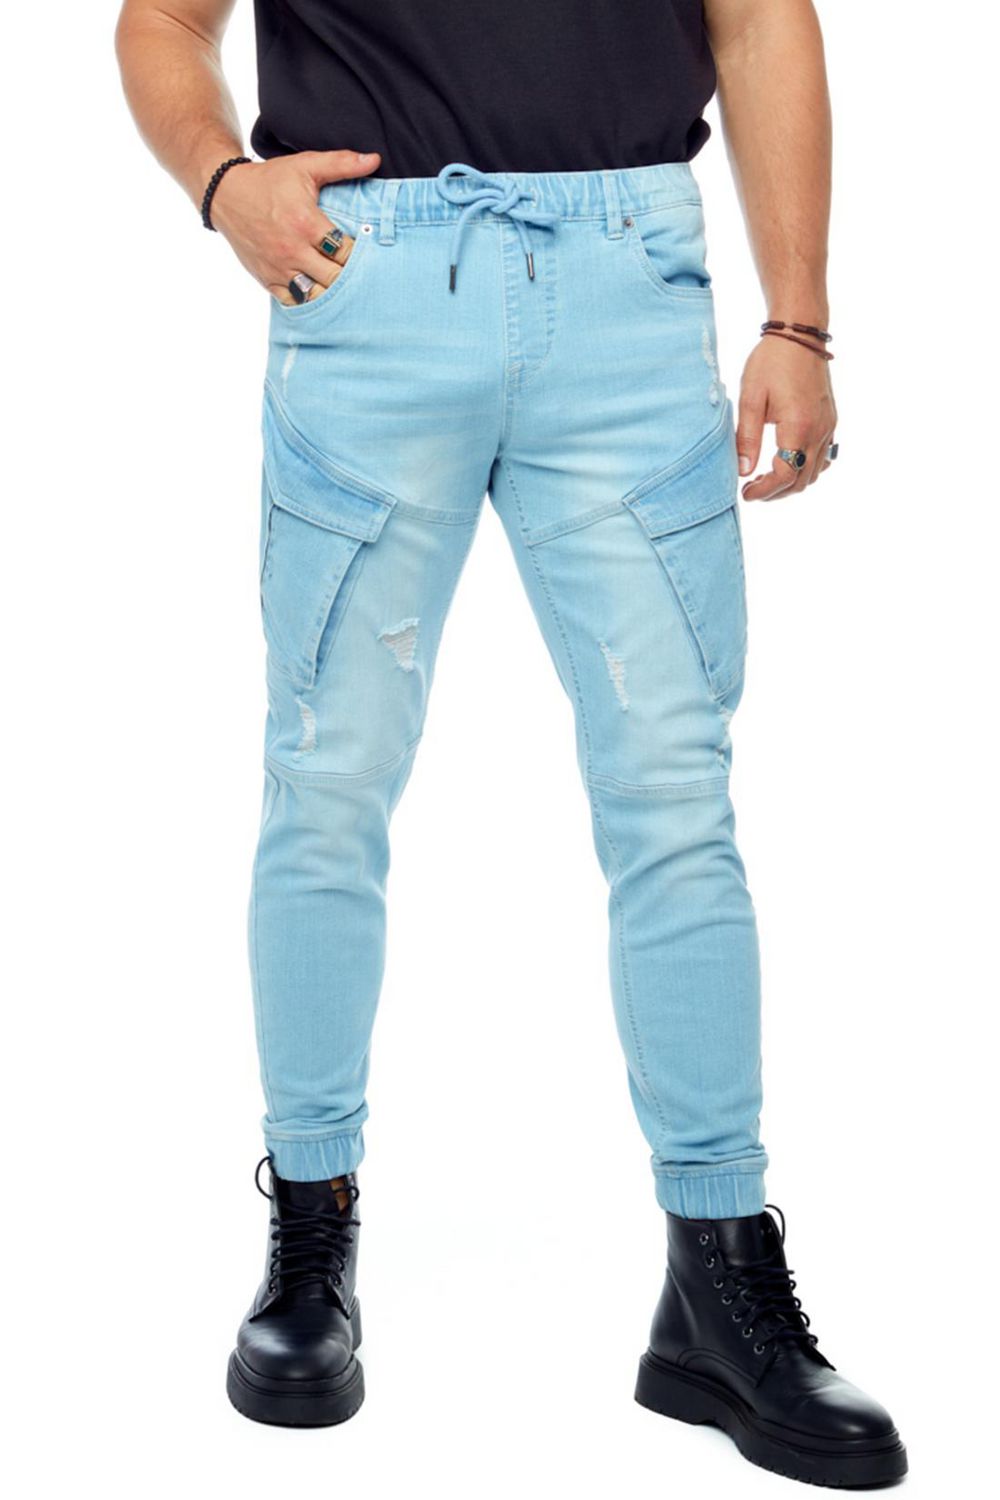 Calça Jeans Jogger Cargo Ov – Menside